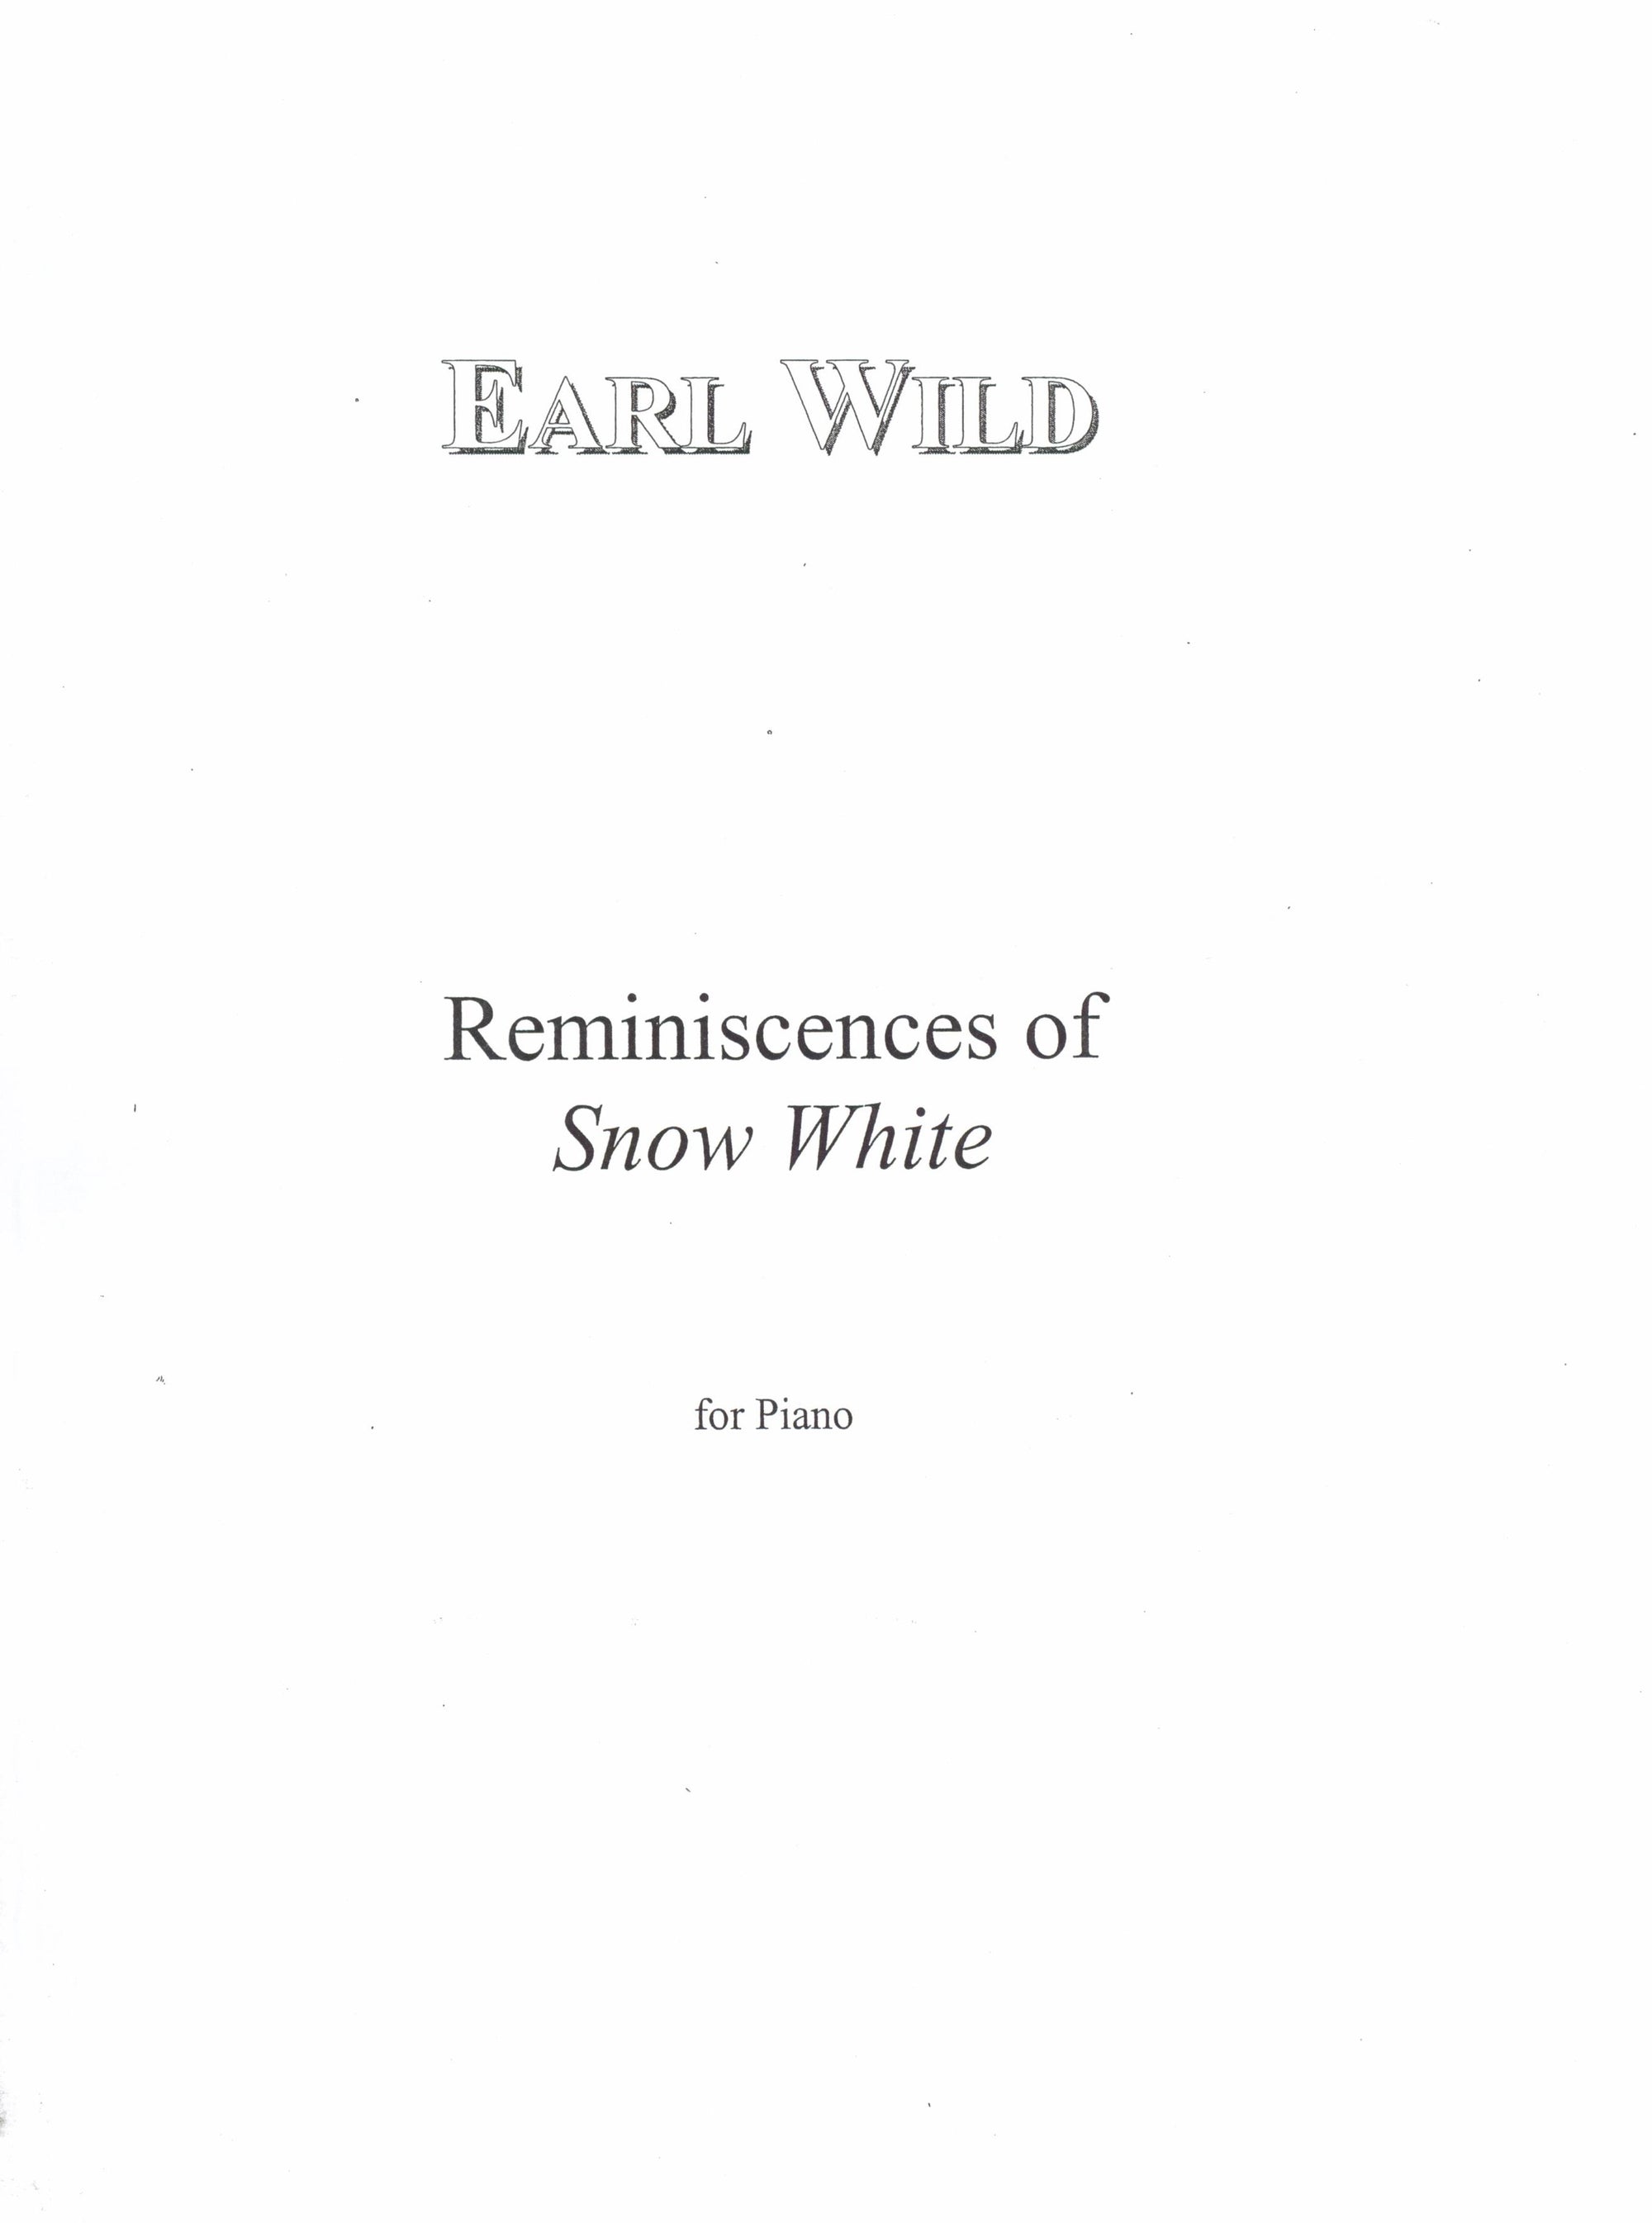 Wild: Reminiscences of Snow White